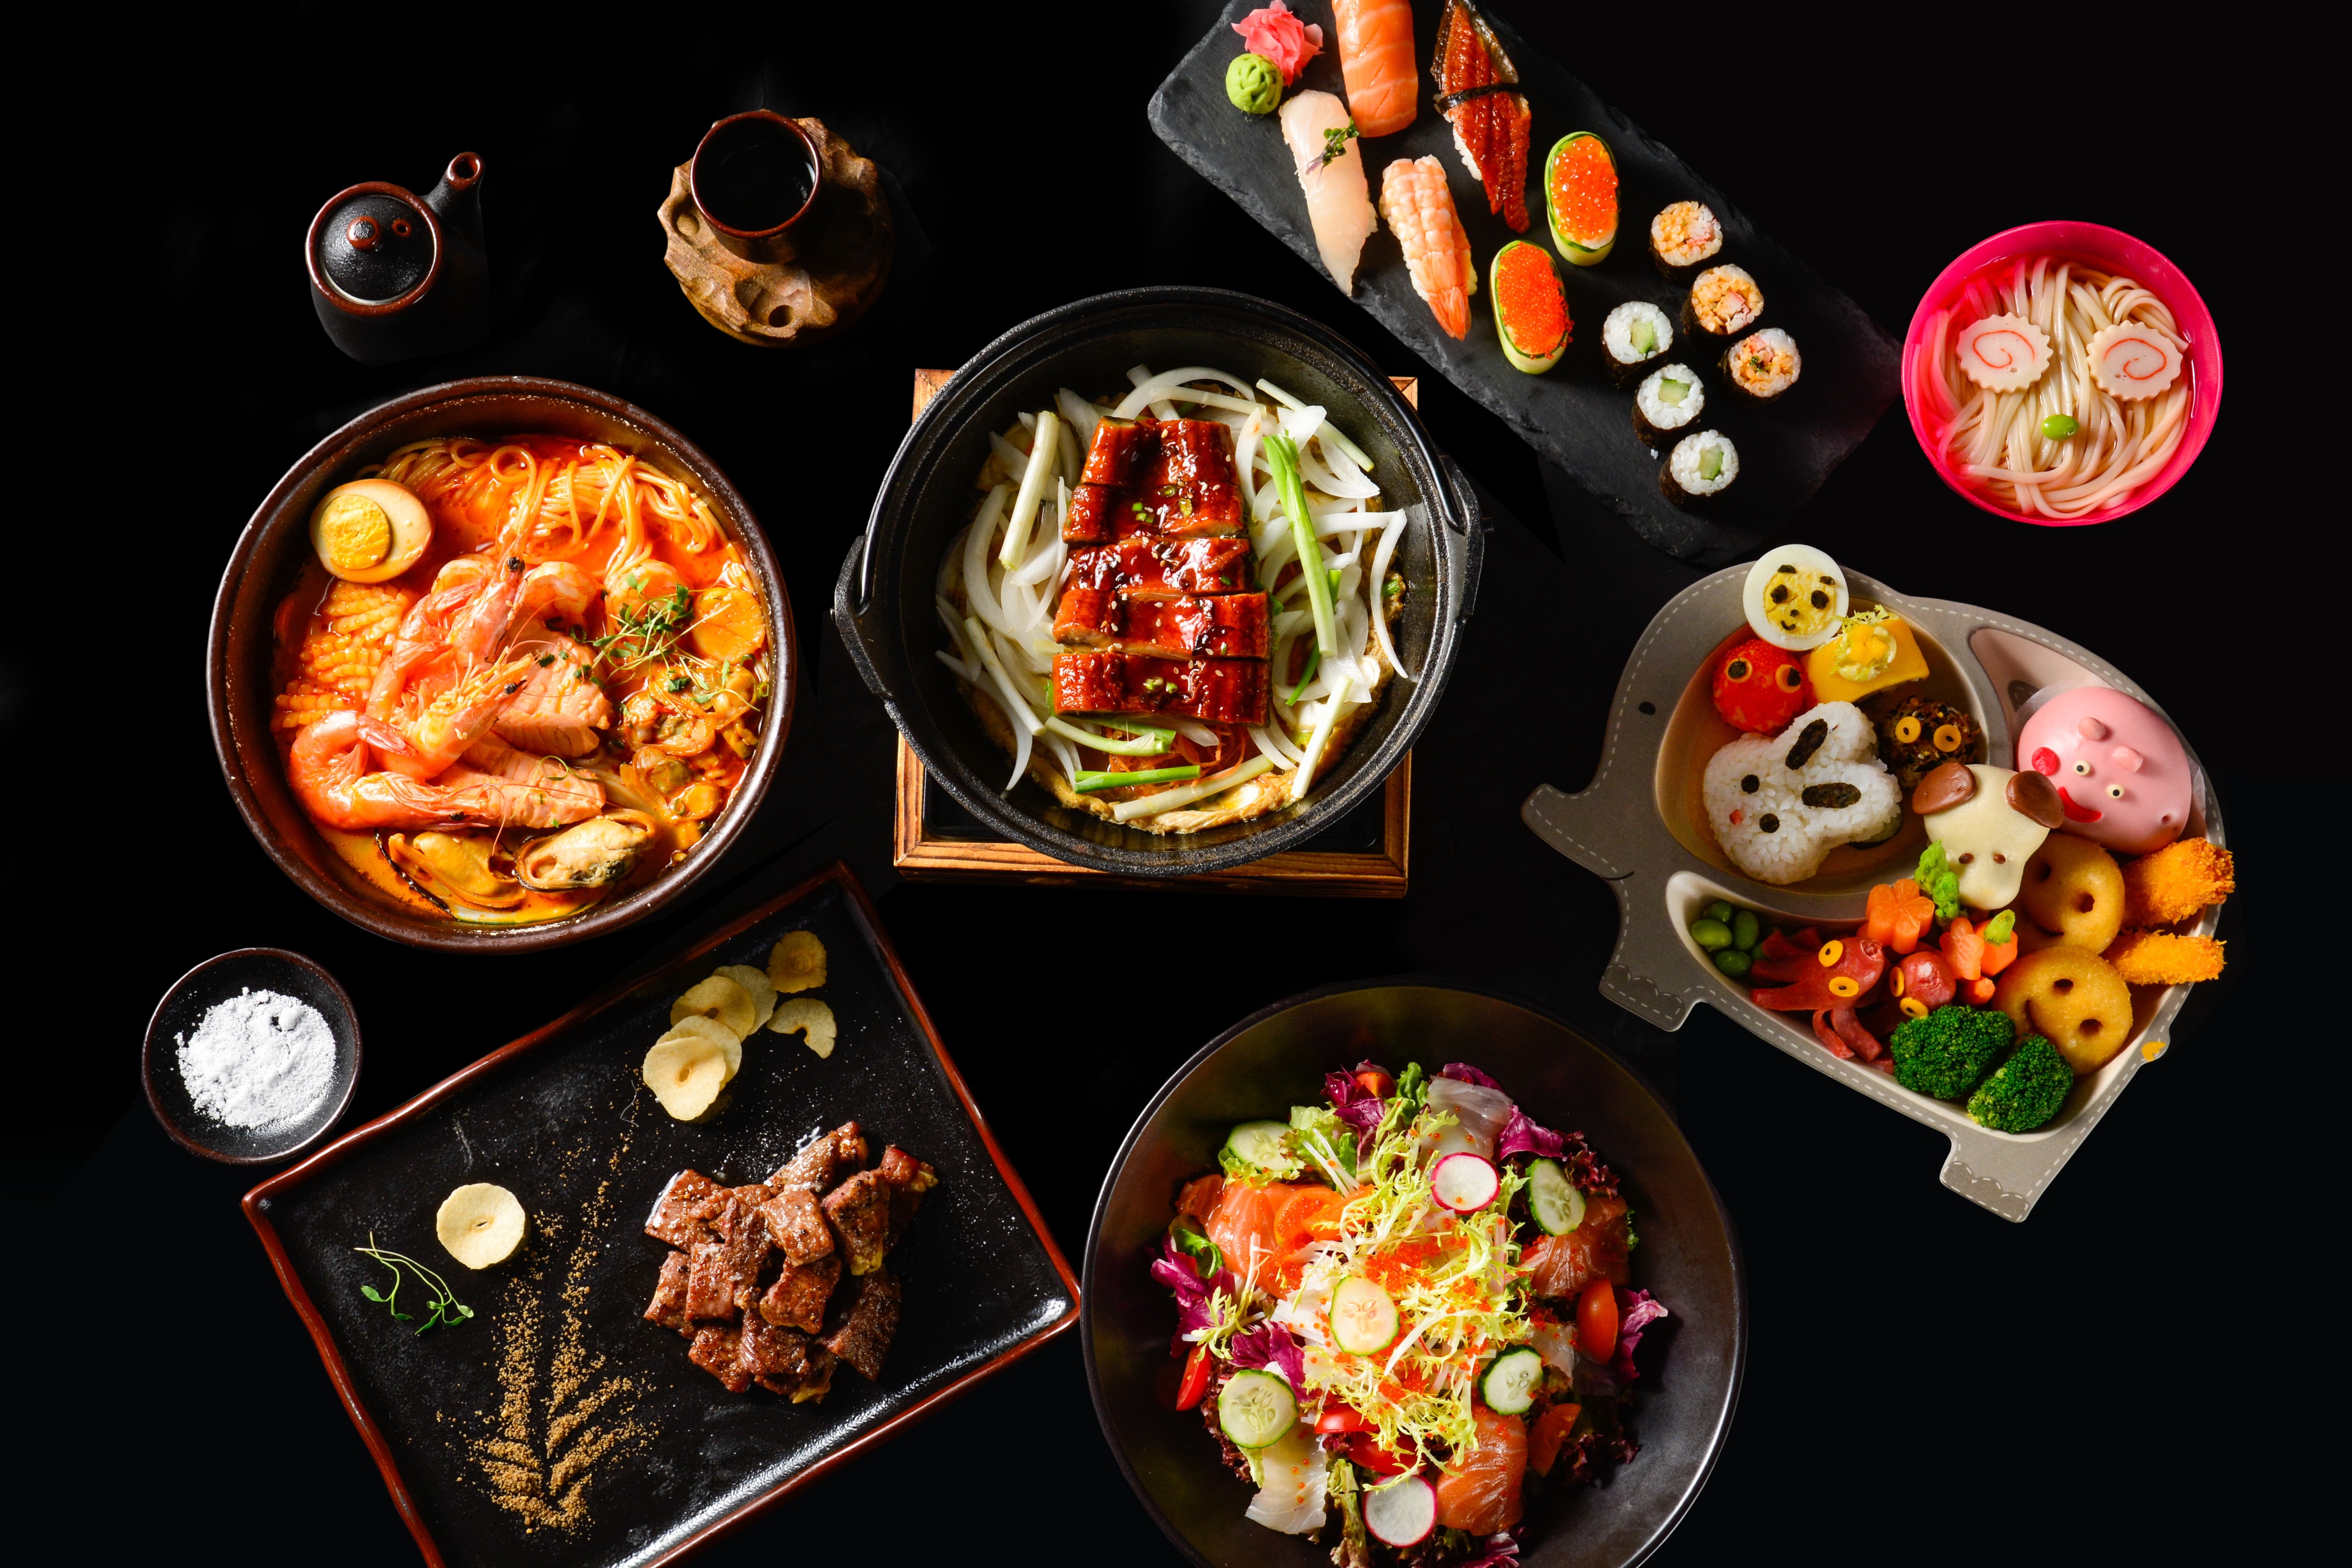 金茂深圳jw万豪酒店为家庭诚意推出品丝日本料理的精致食材,还可享